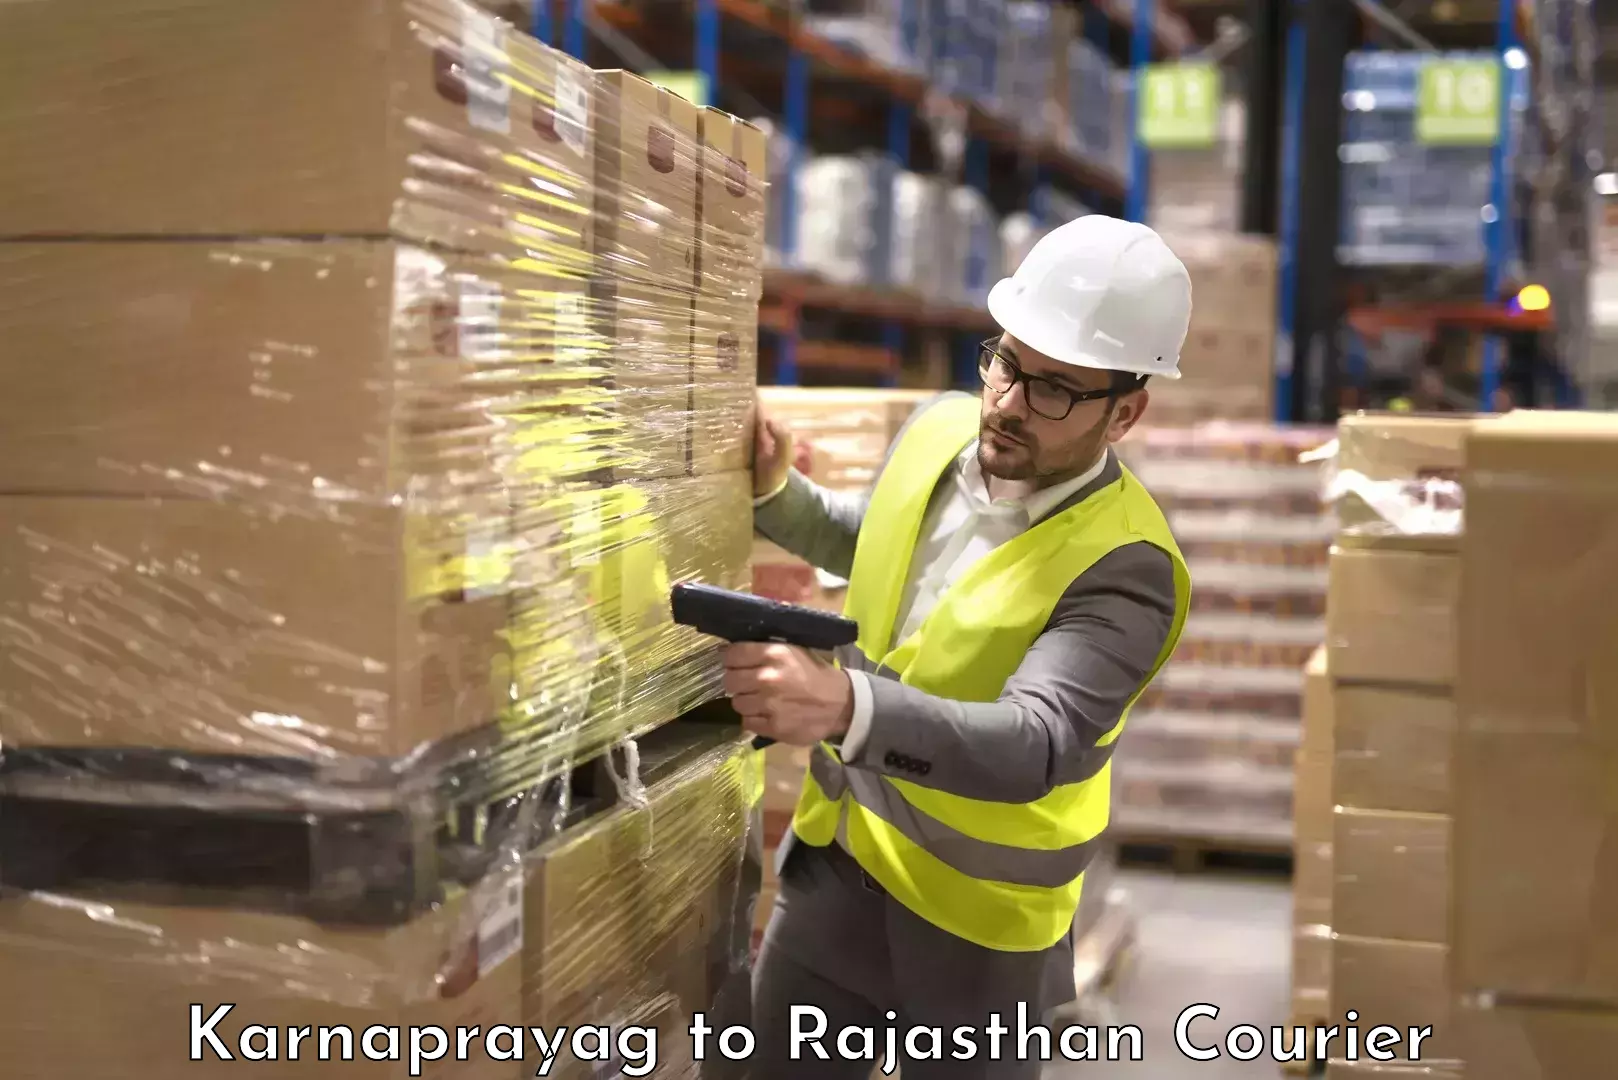 Luggage shipment specialists Karnaprayag to Ras Pali